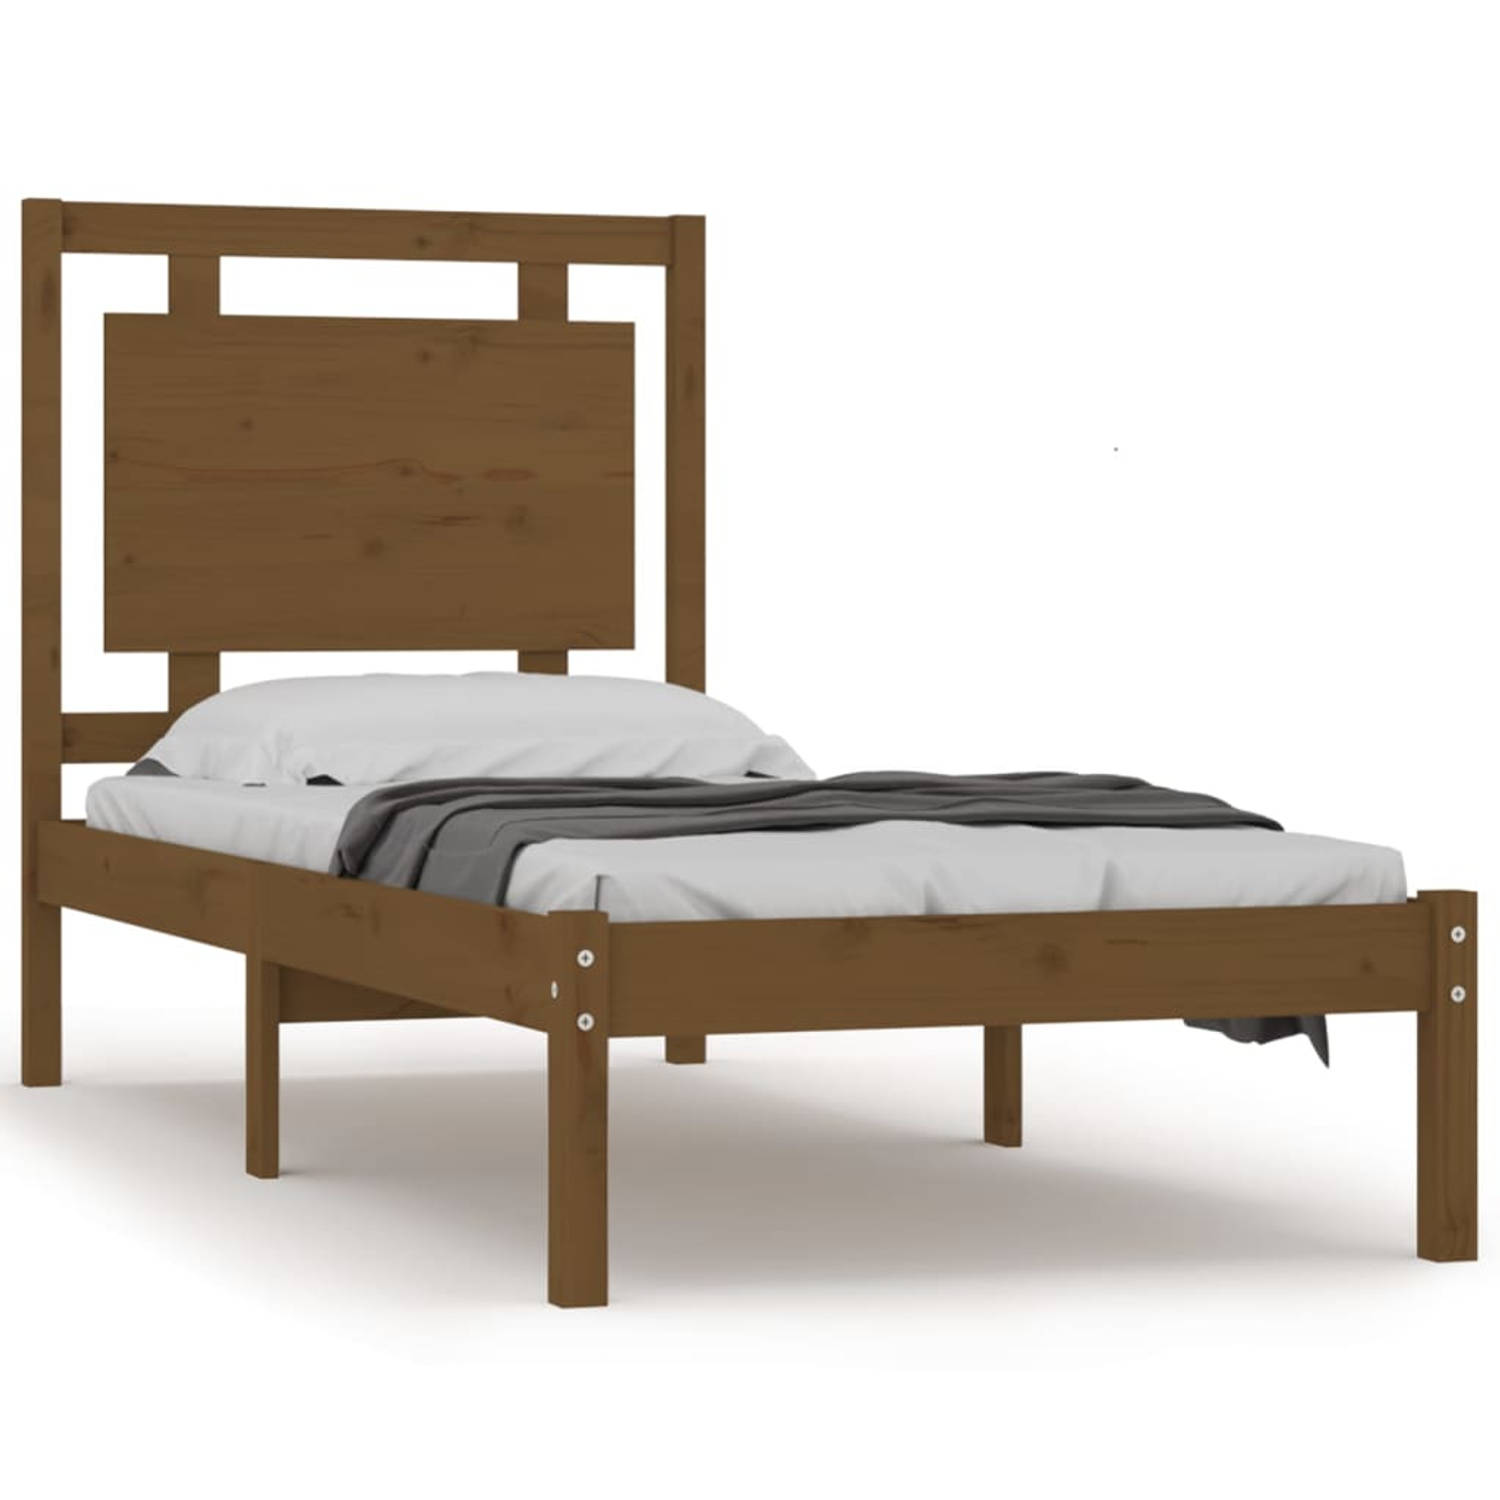 The Living Store Bedframe massief hout honingbruin 75x190 cm 2FT6 Small Single - Bedframe - Bedframes - Eenpersoonsbed - Bed - Bedombouw - Ledikant - Houten Bedframe - Eenpersoonsb